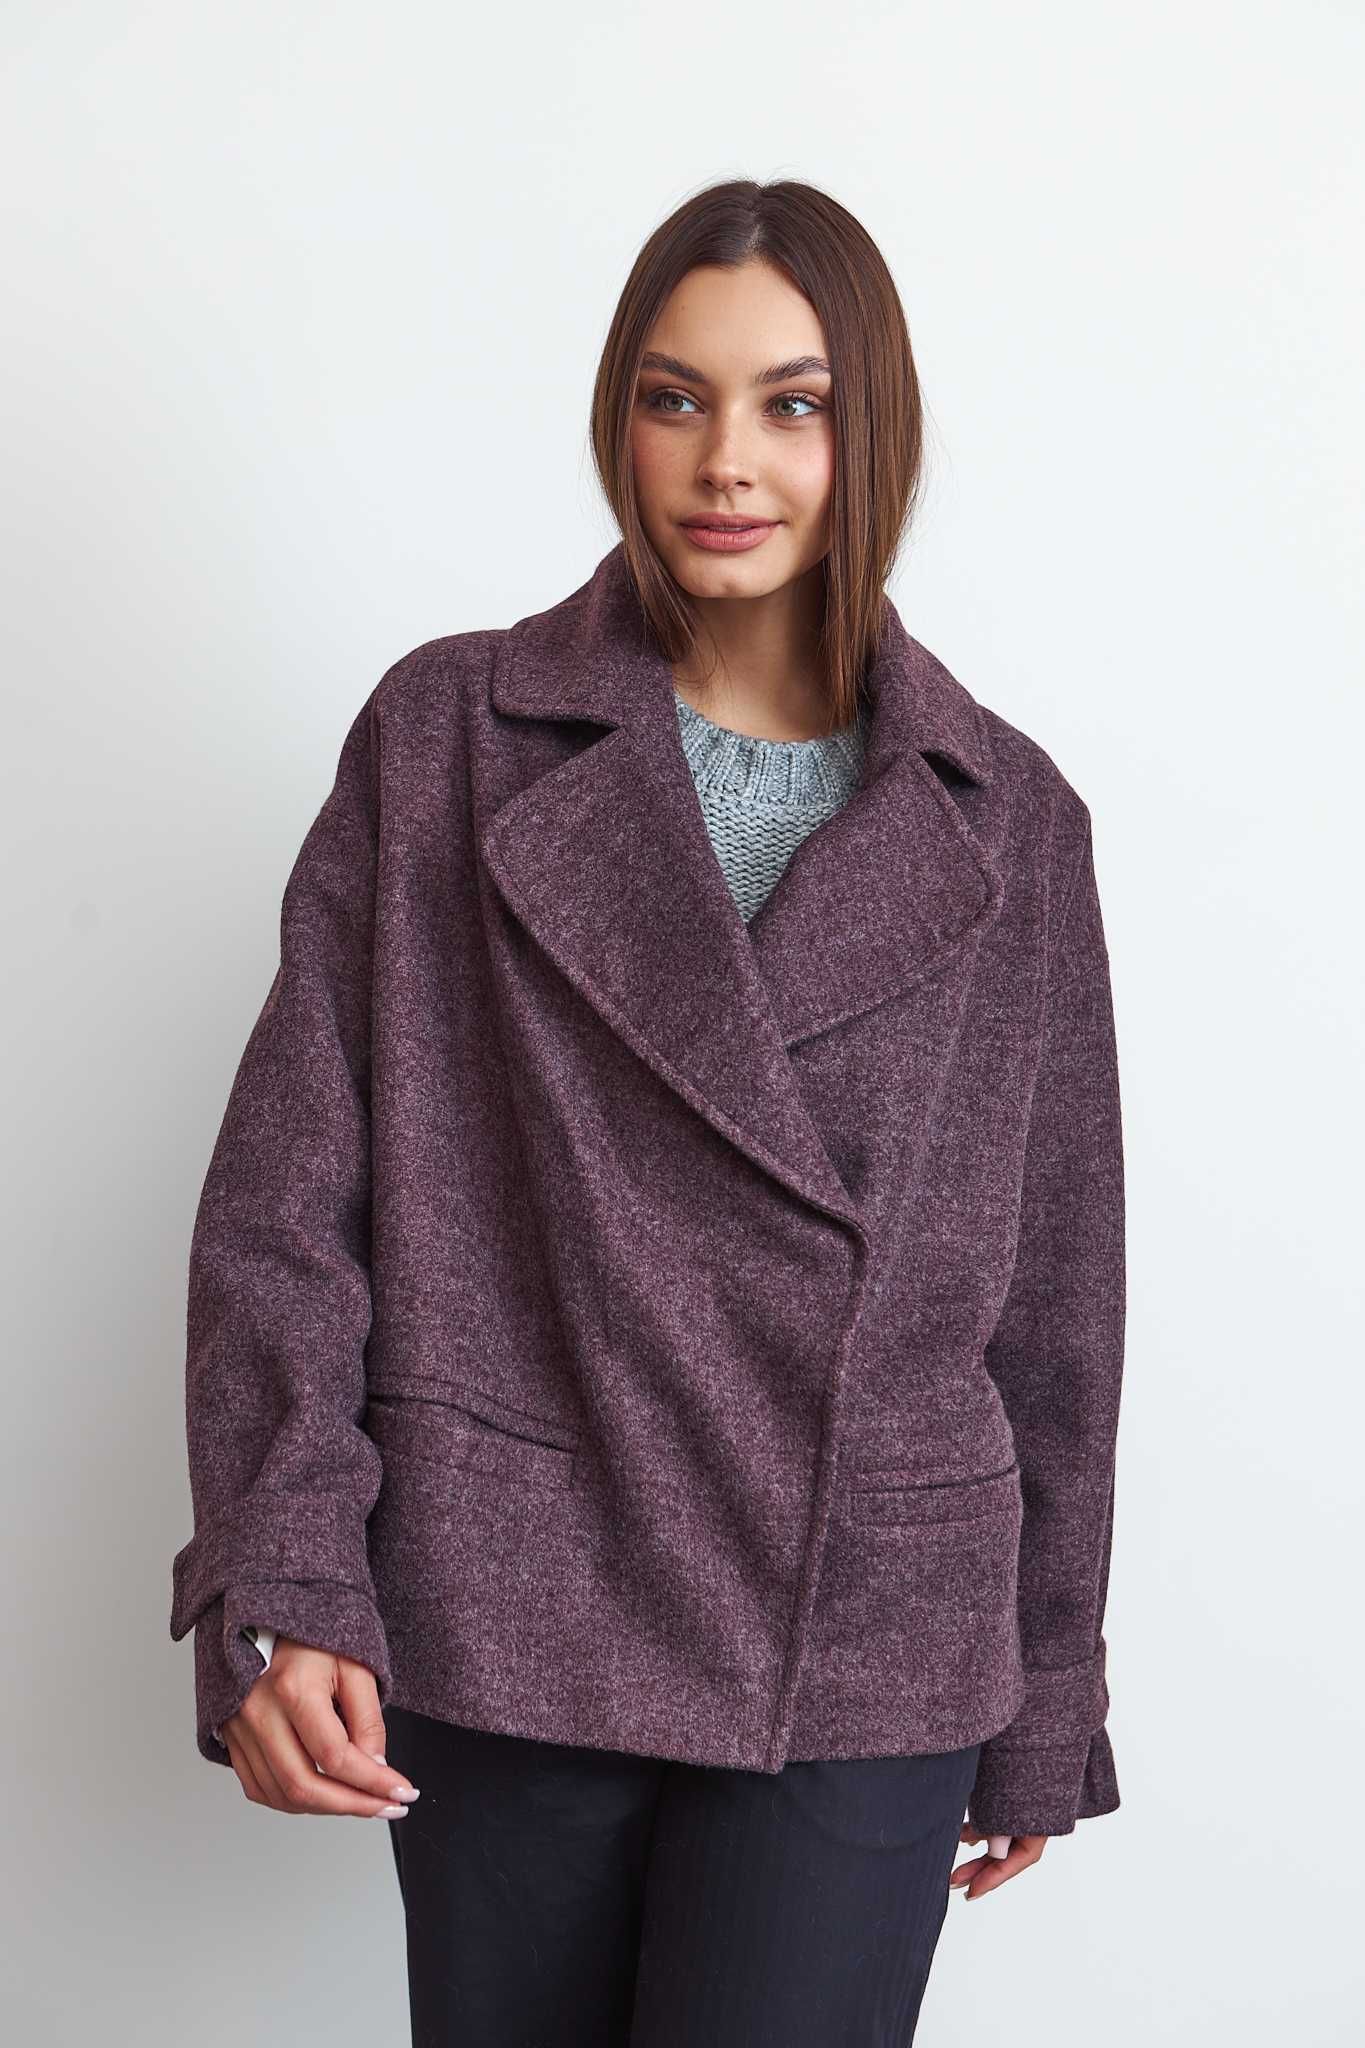 Стильное пальто Италия шерсть кашемир  новая коллекция Шикарный цвет